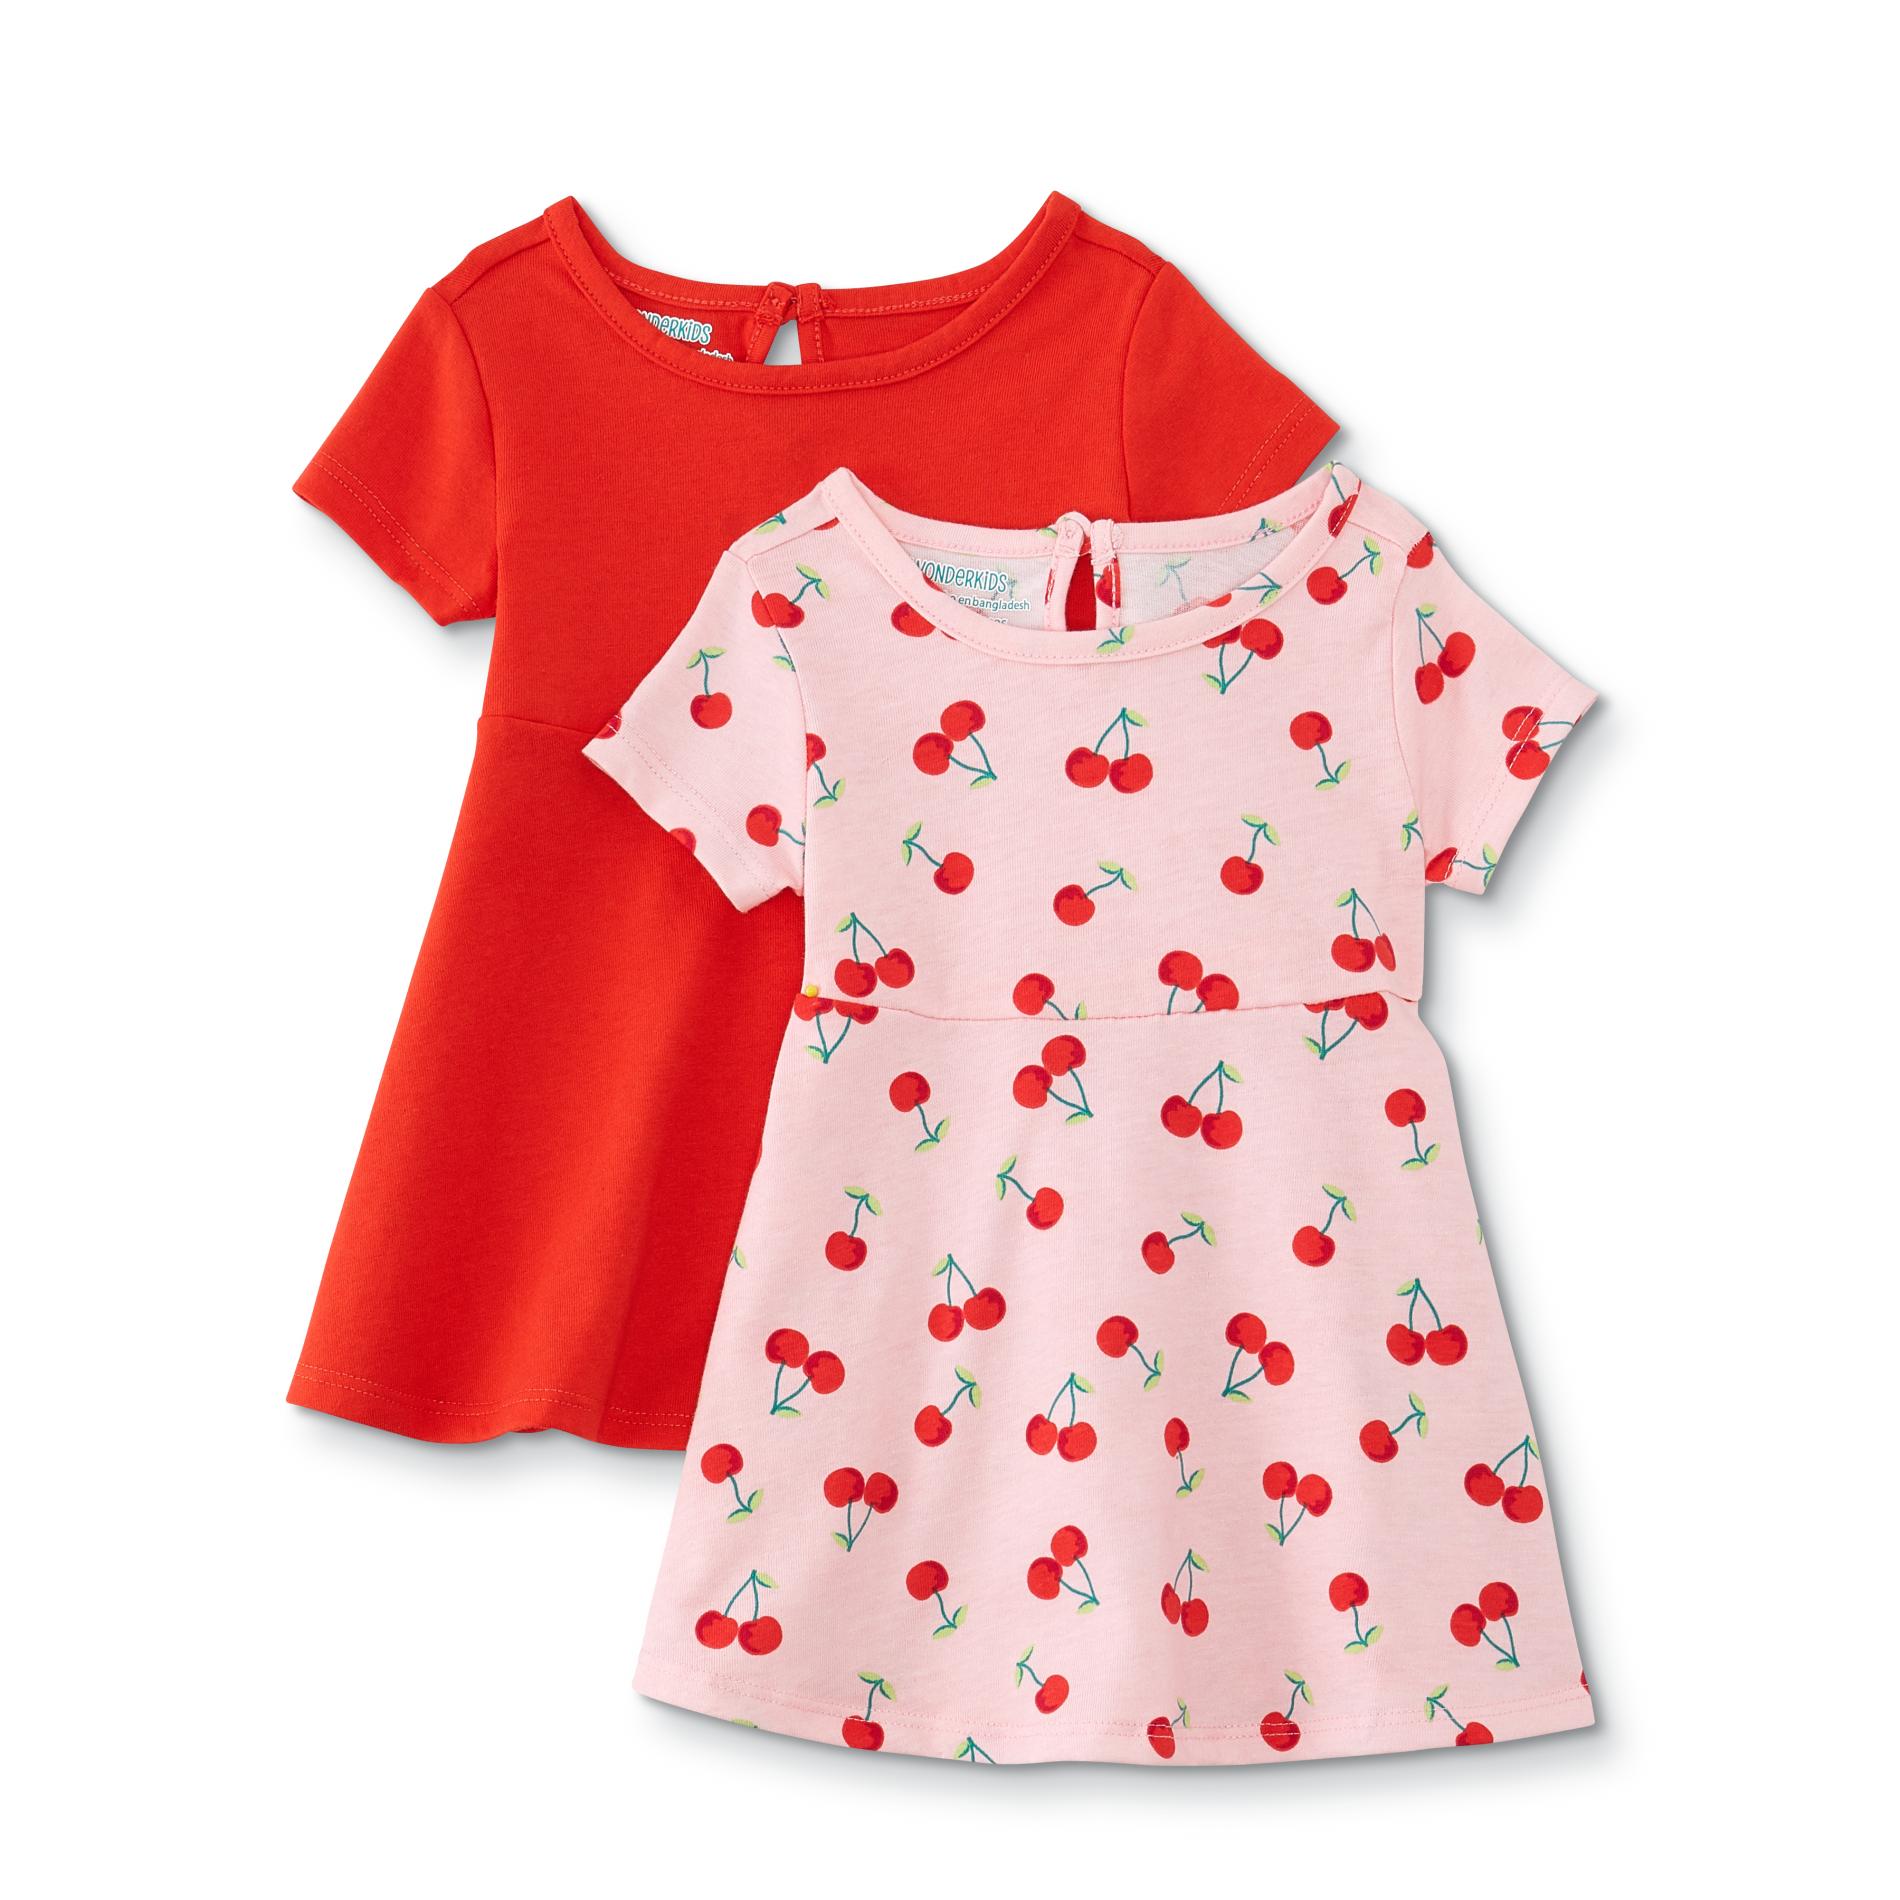 WonderKids Infant & Toddler Girls' 2-Pack Skater Dresses - Solid & Cherry